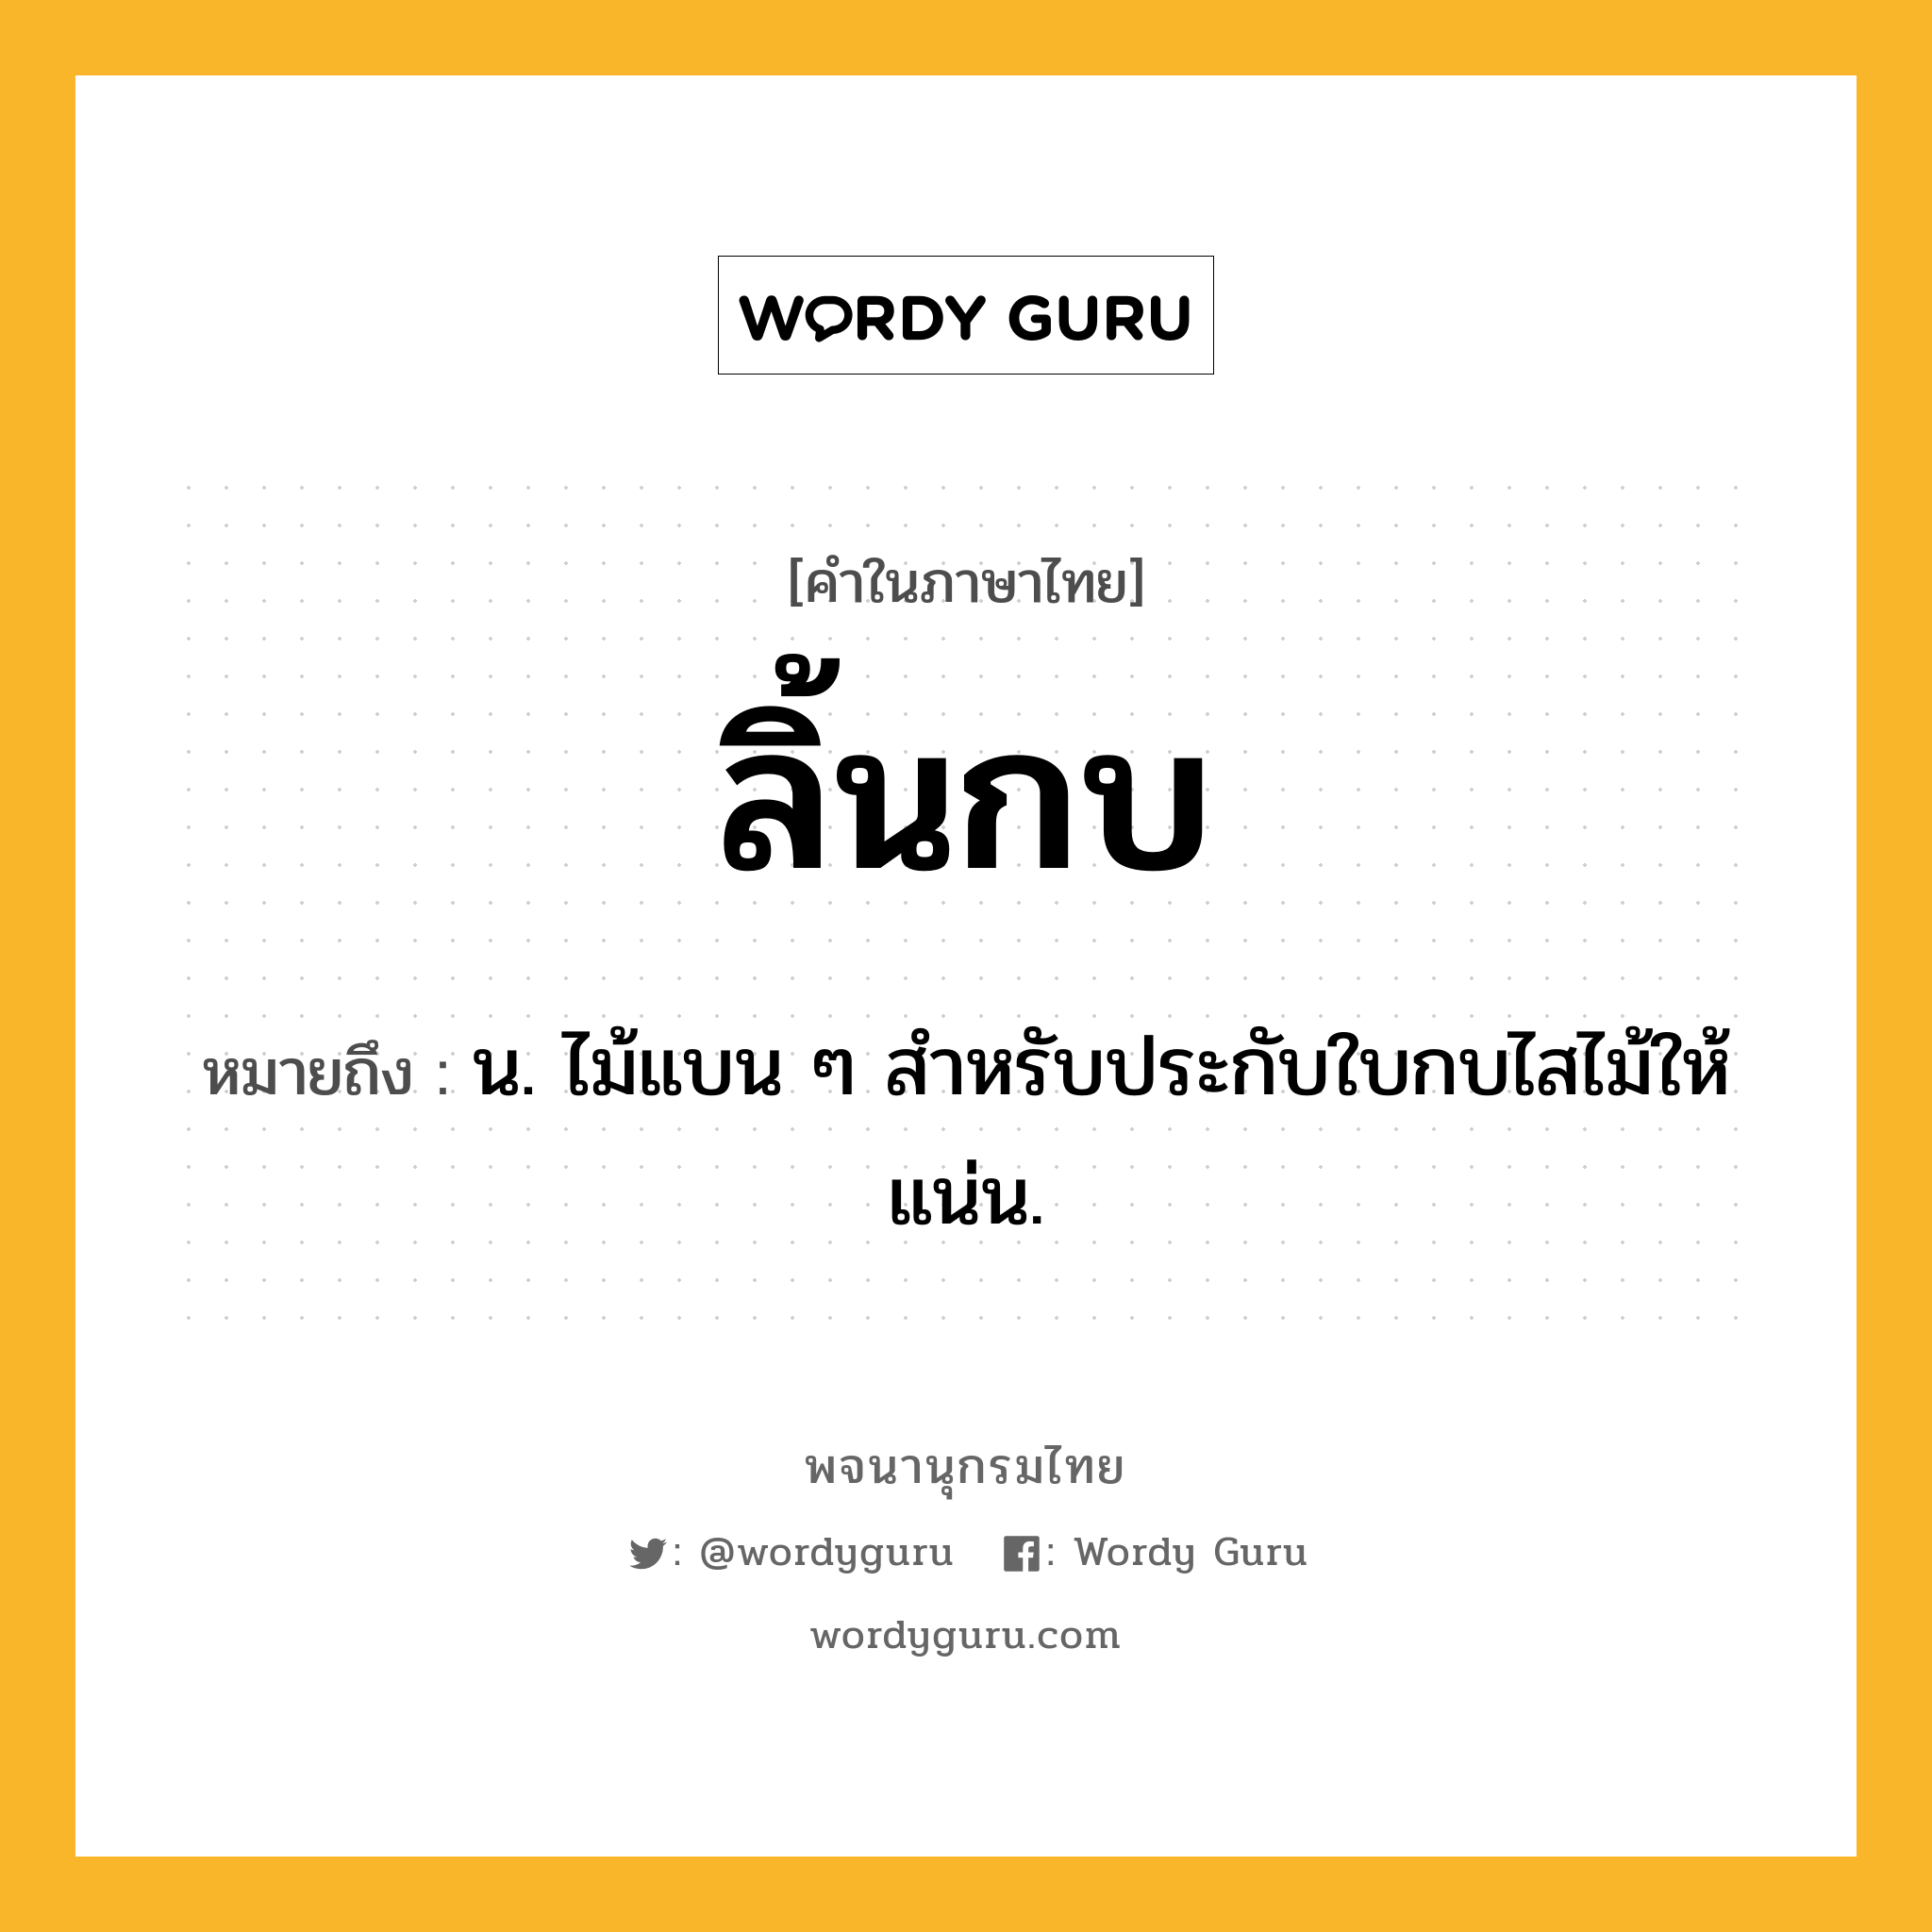 ลิ้นกบ ความหมาย หมายถึงอะไร?, คำในภาษาไทย ลิ้นกบ หมายถึง น. ไม้แบน ๆ สำหรับประกับใบกบไสไม้ให้แน่น.